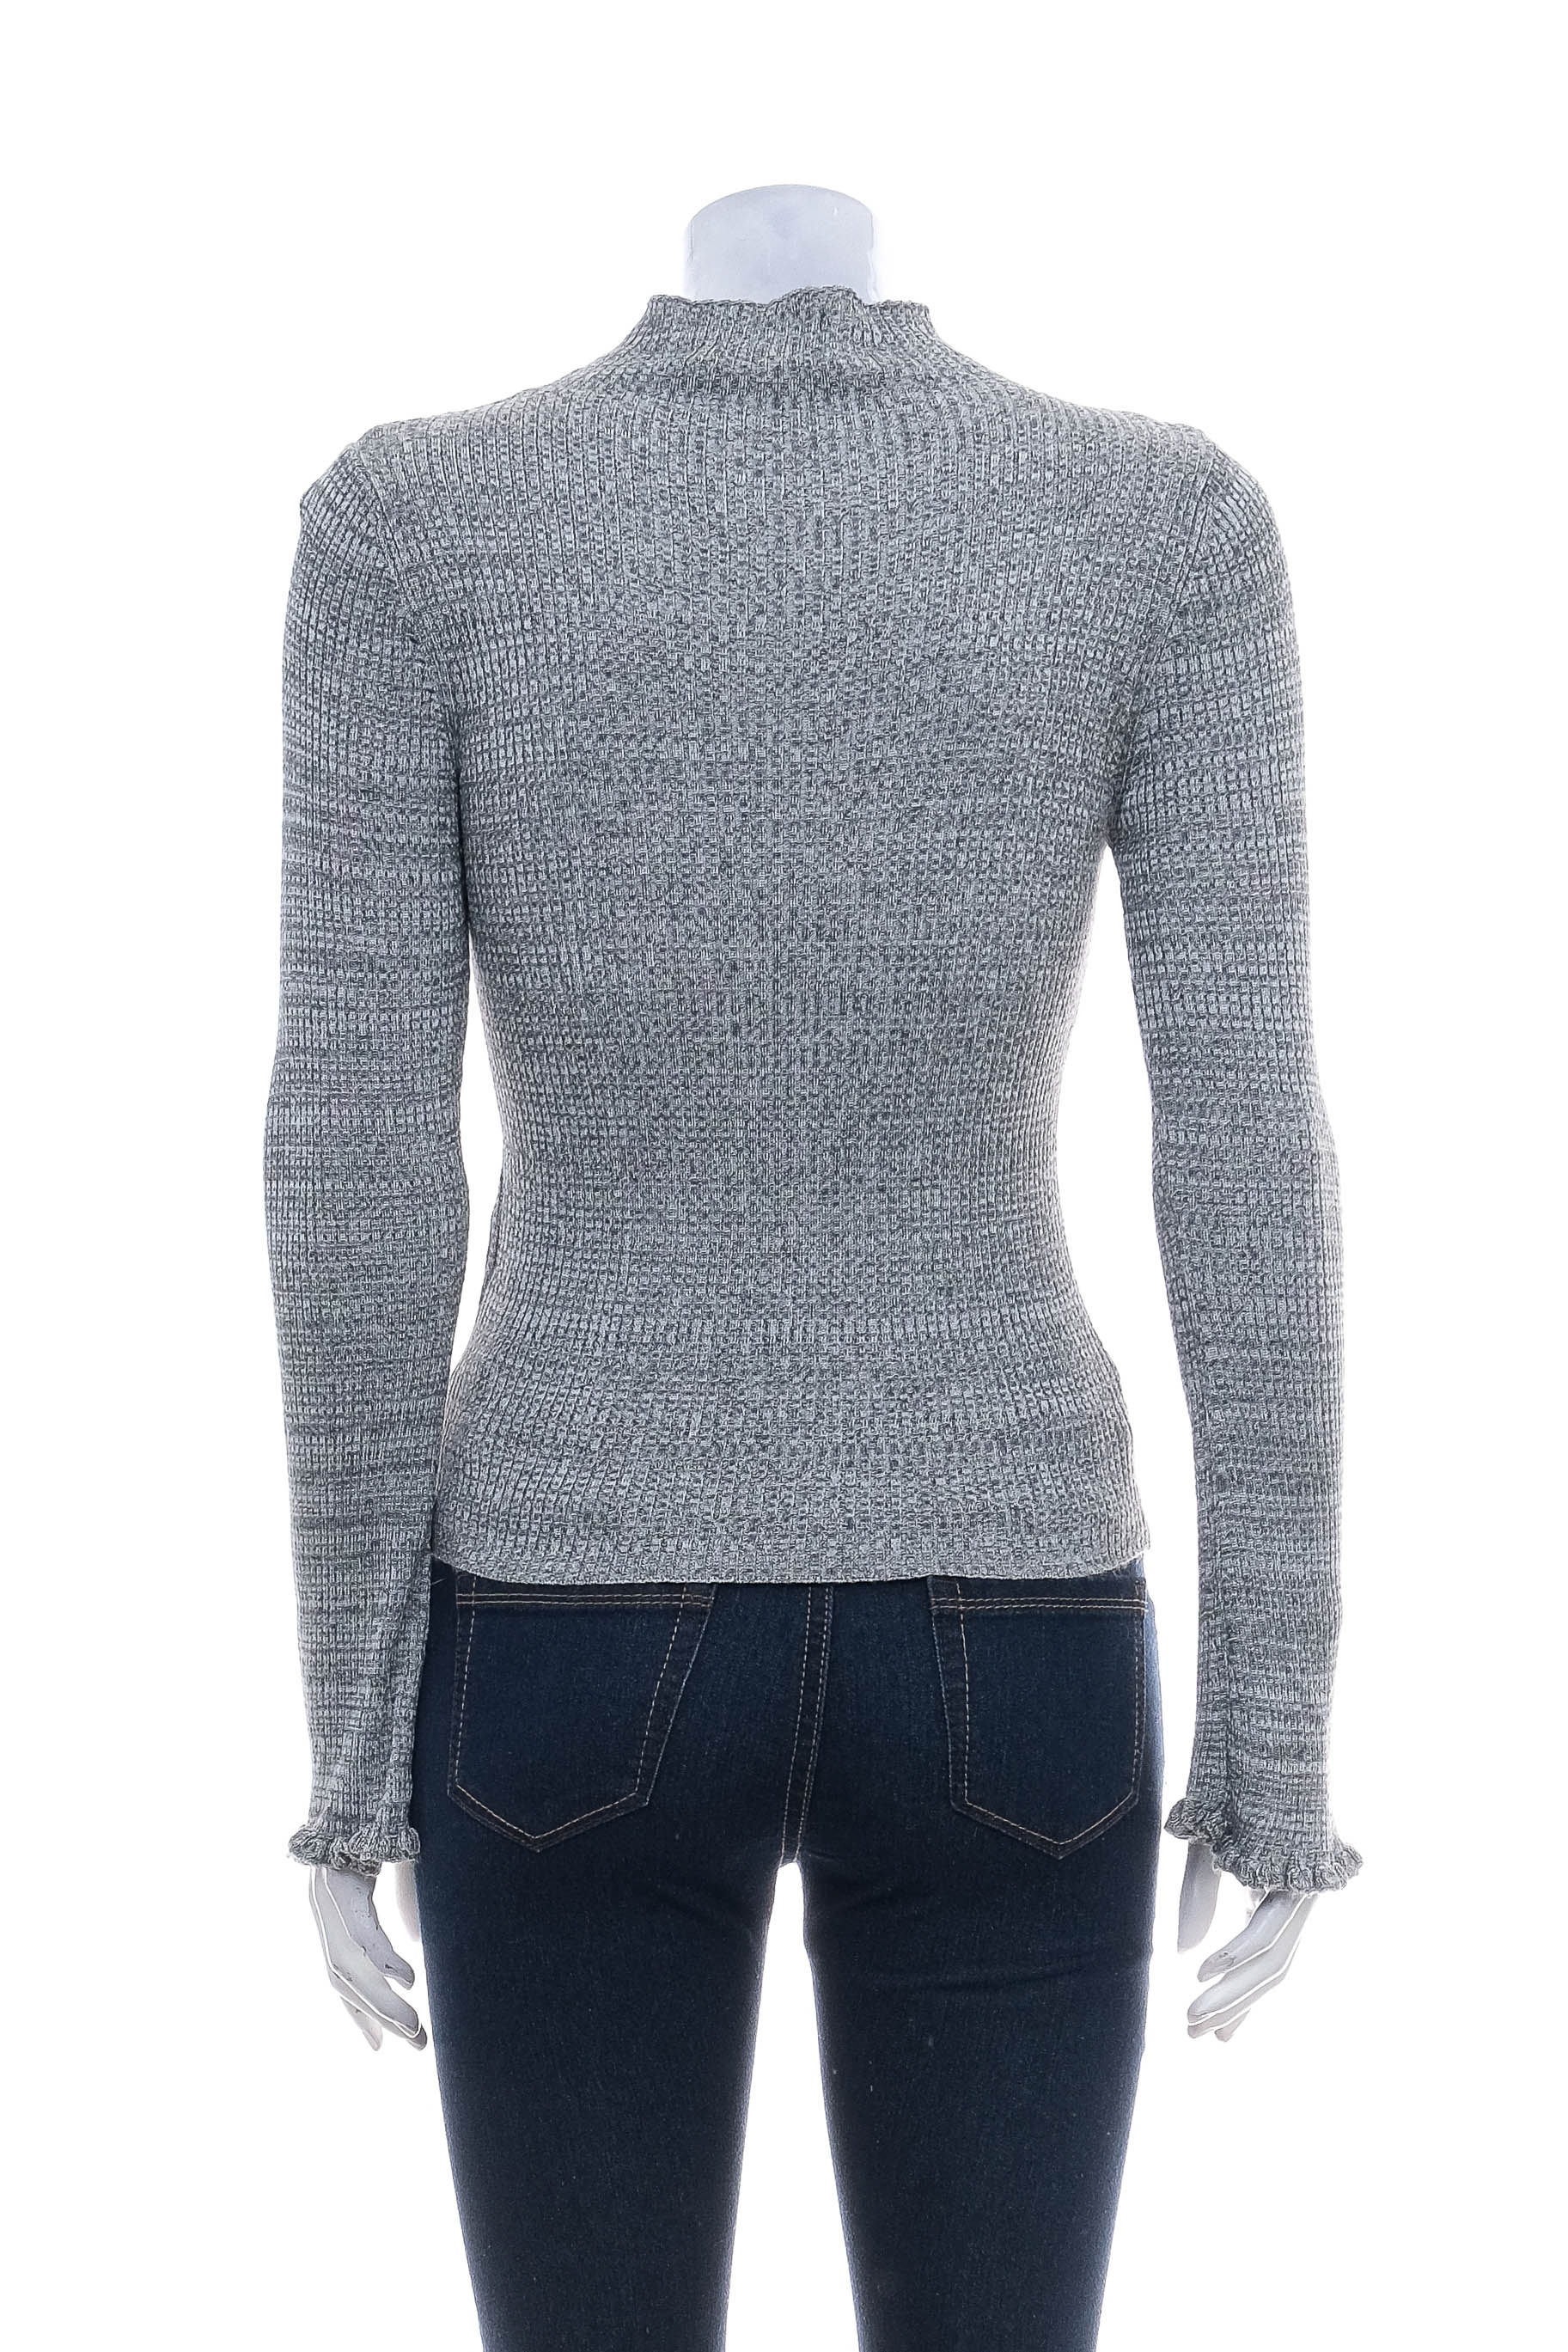 Women's sweater - MINKPINK - 1